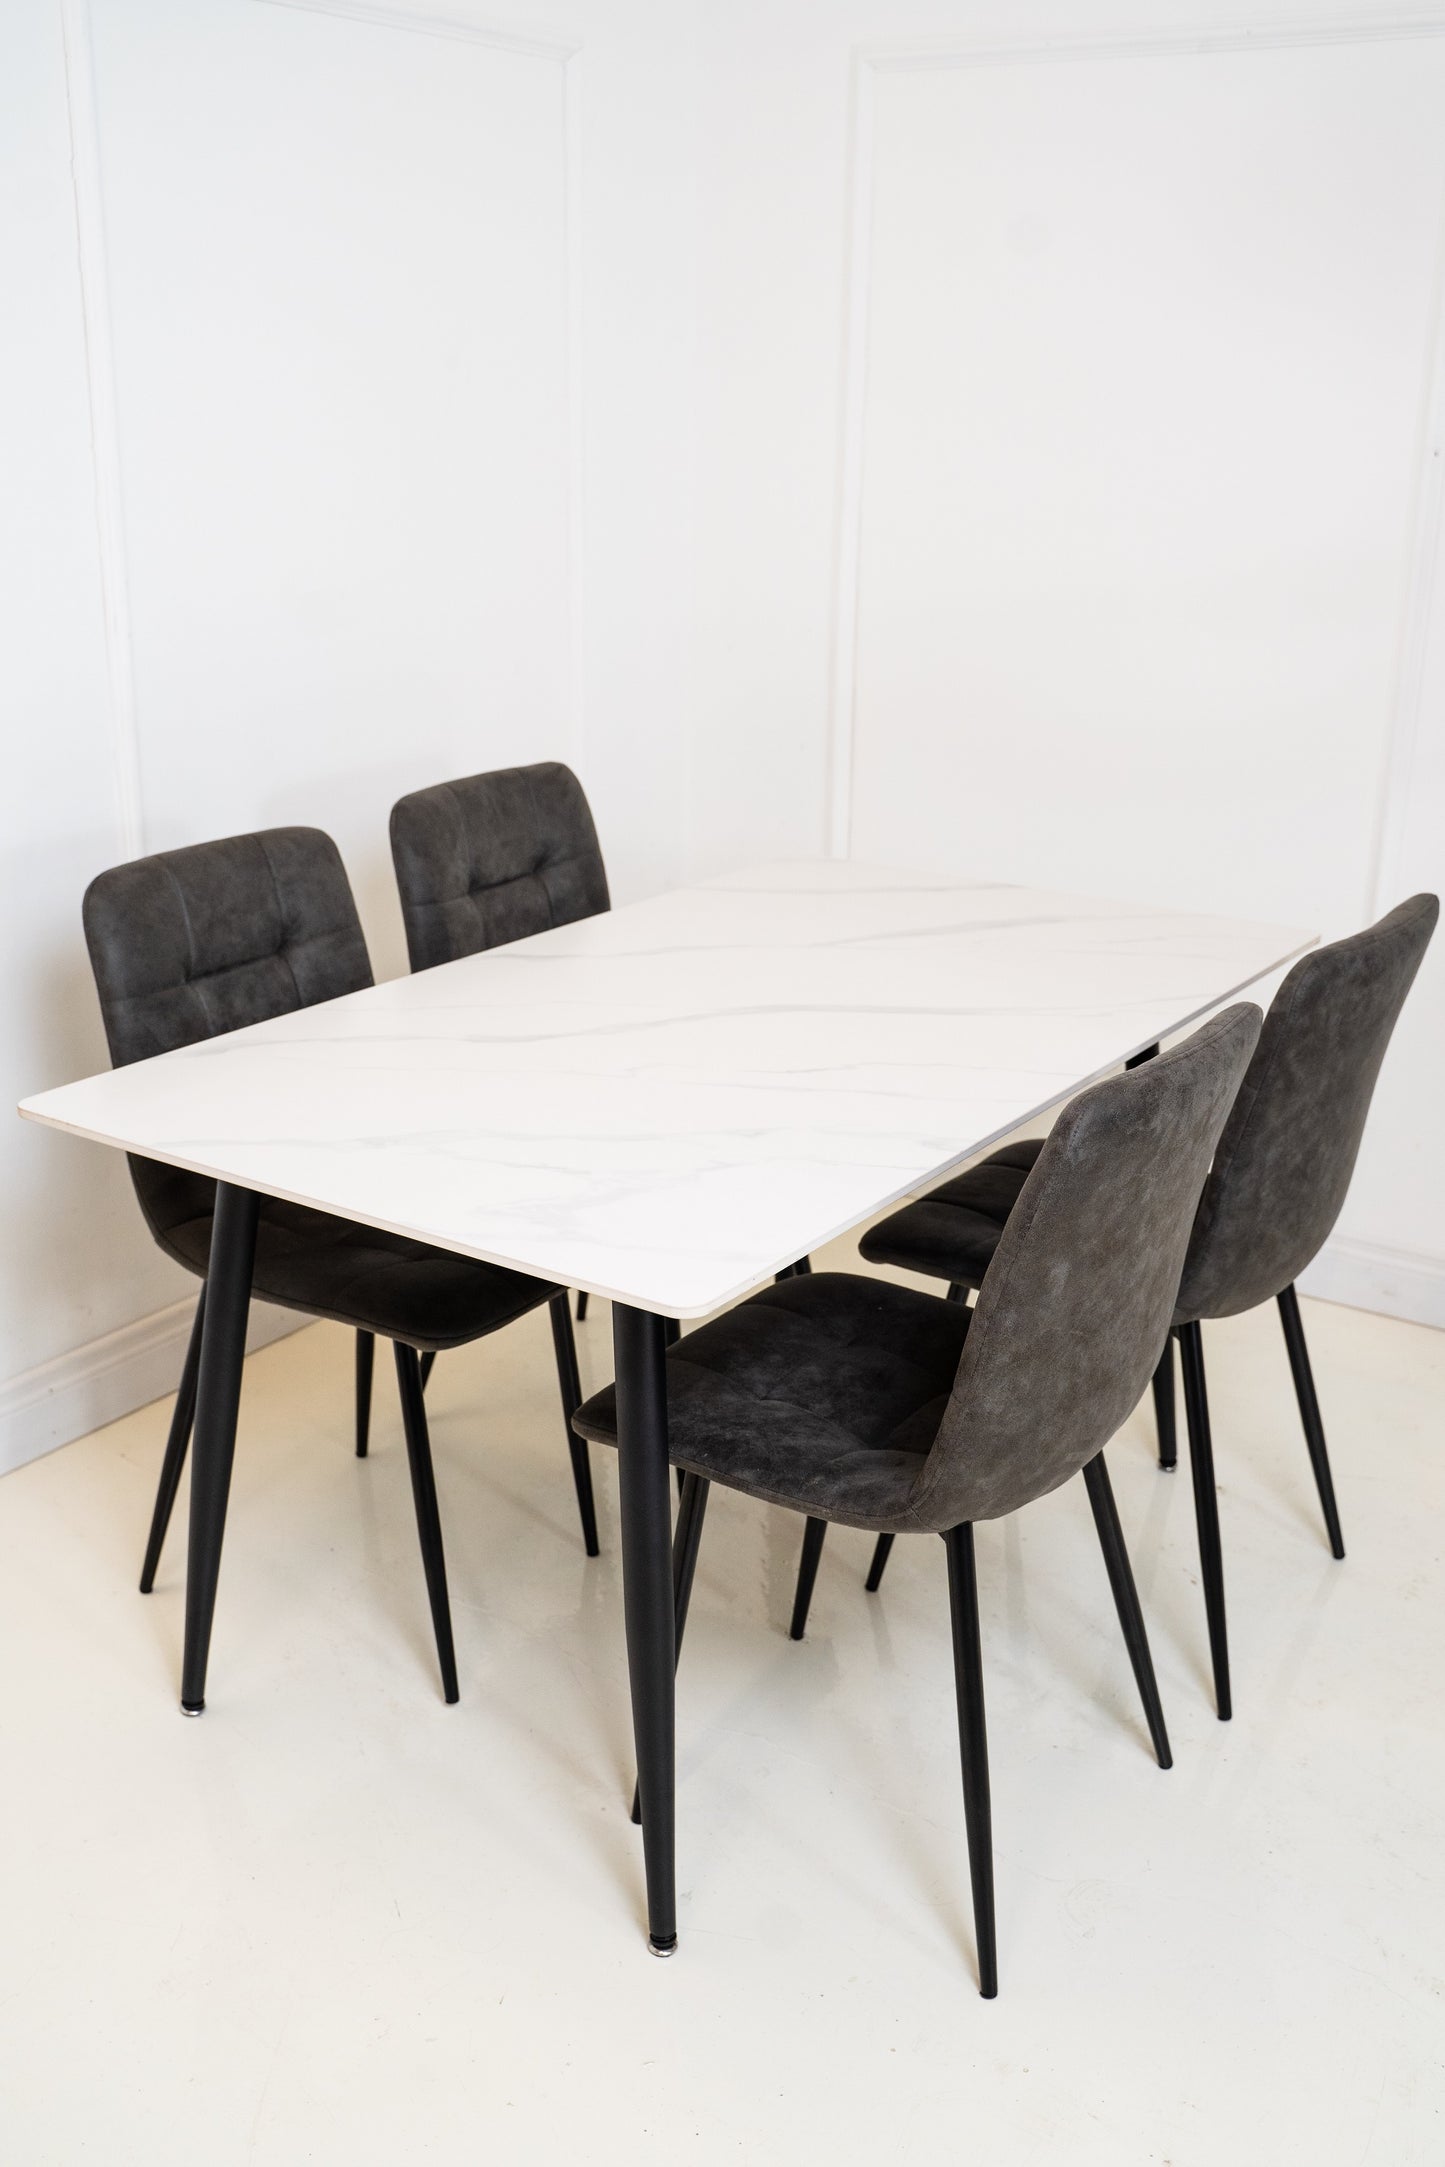 Apollo Dining Table 1.4m Set  - Sintered Stone White